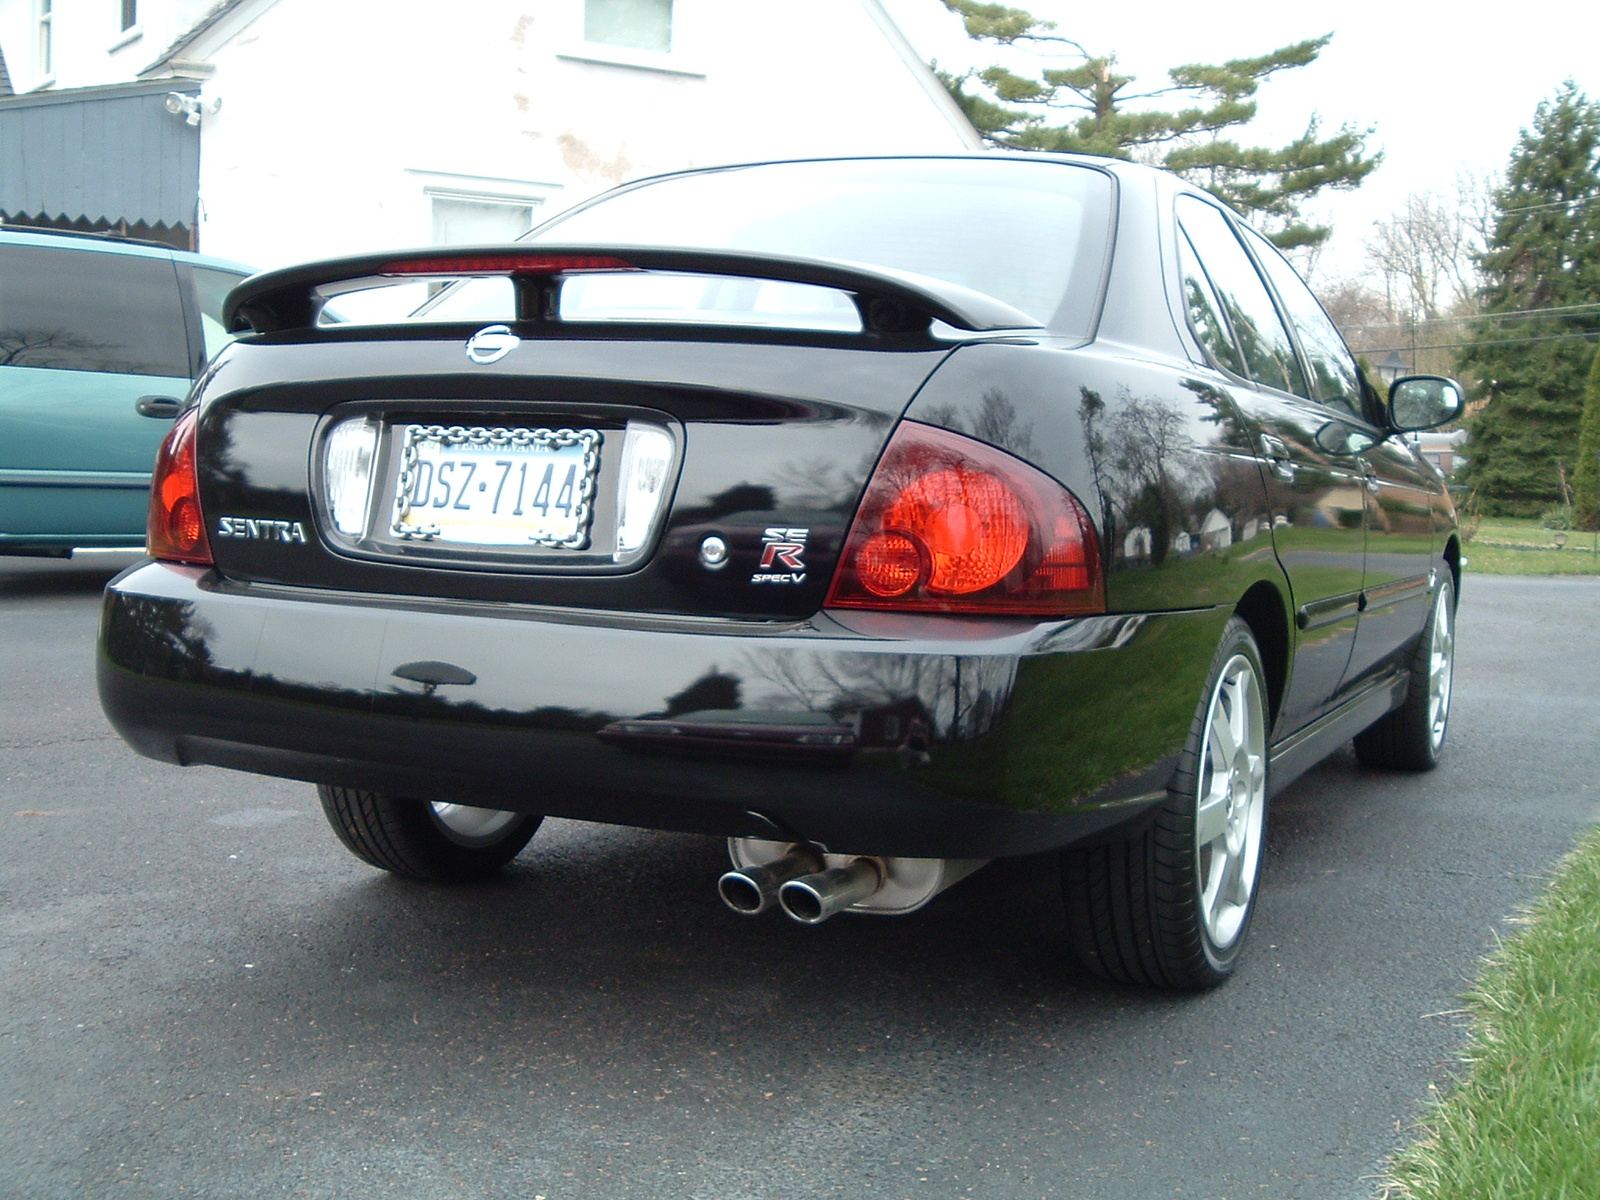 2004 Nissan sentra ser - spec v sedan #2